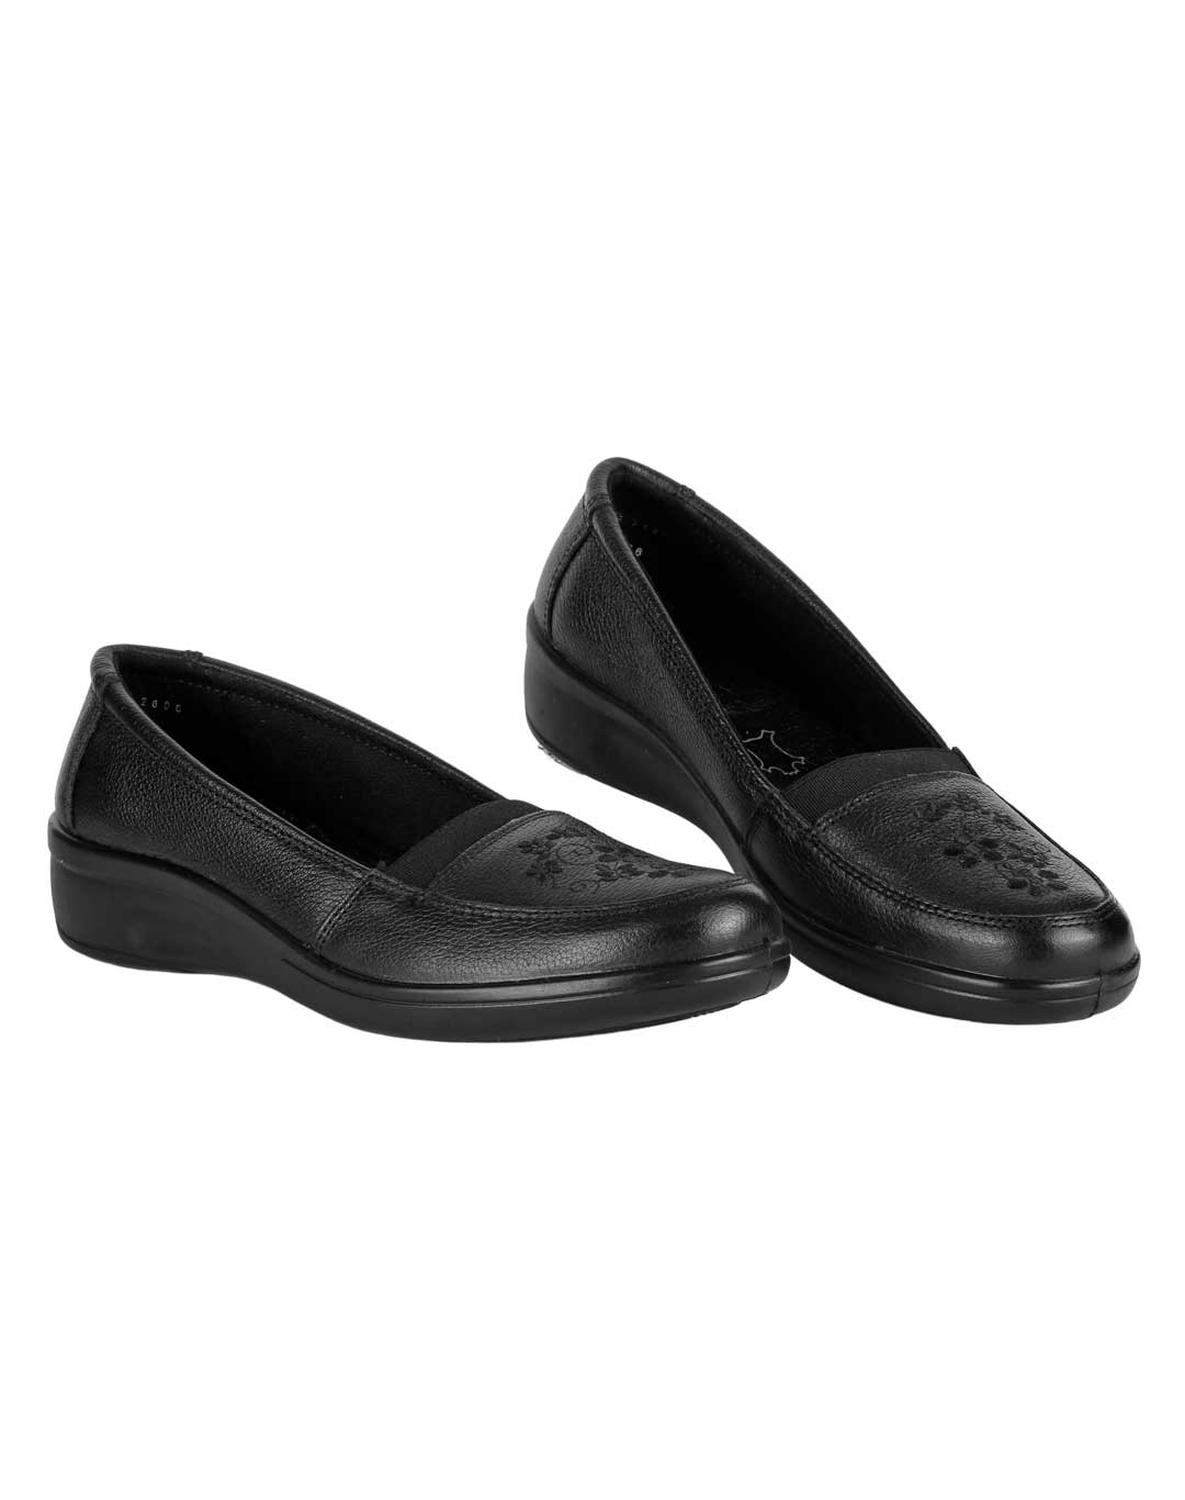 Zapato Casual Mujer Negro Piel Flexi 02503205